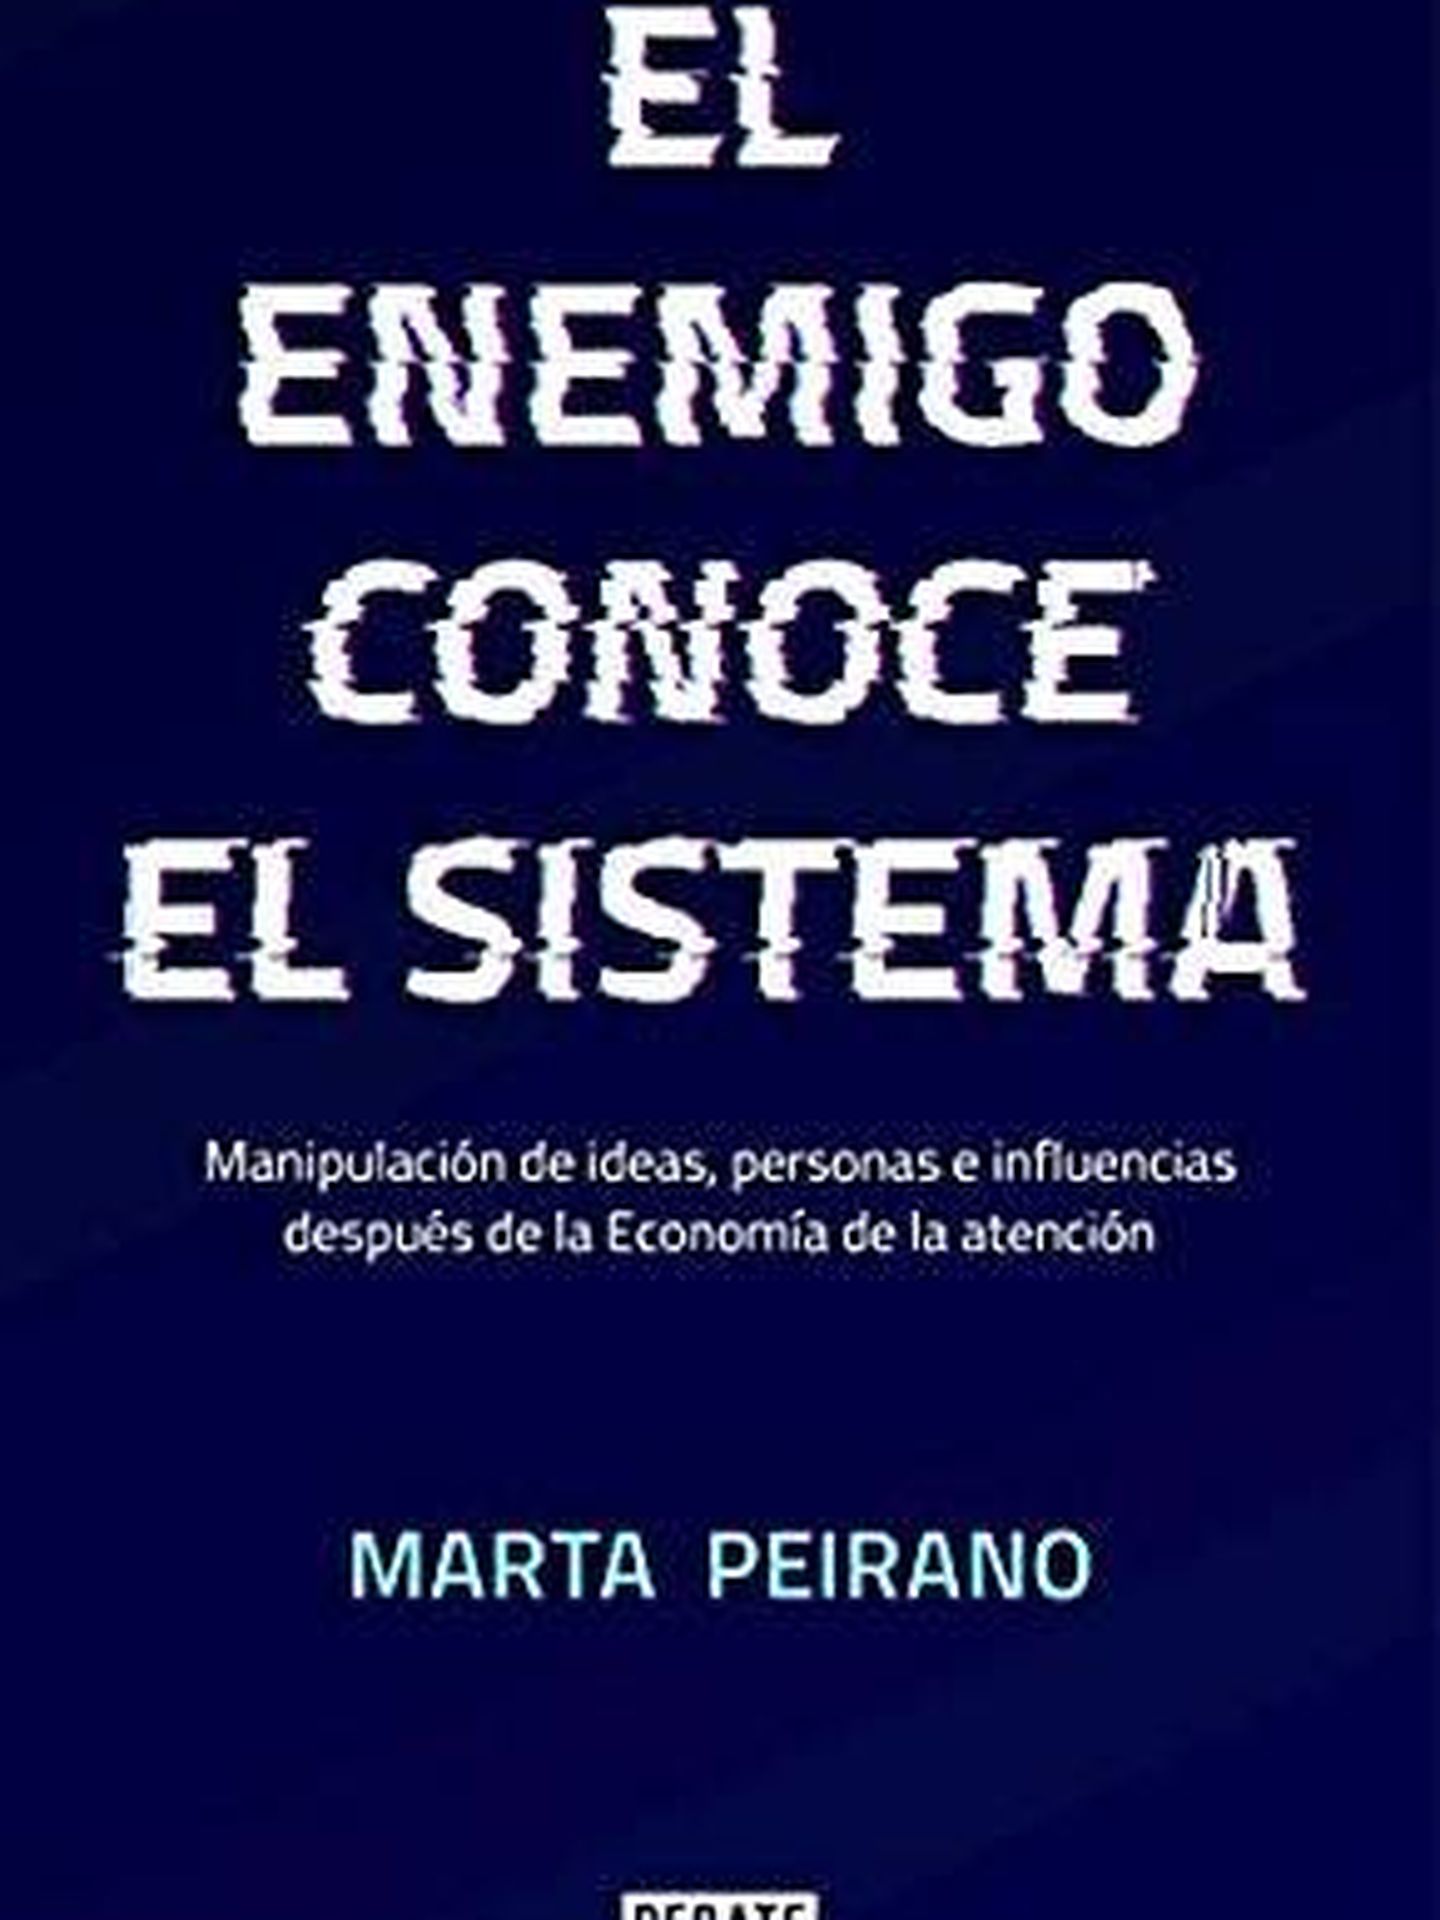 Portada de 'El enemigo conoce el sistema', de Marta Peirano.